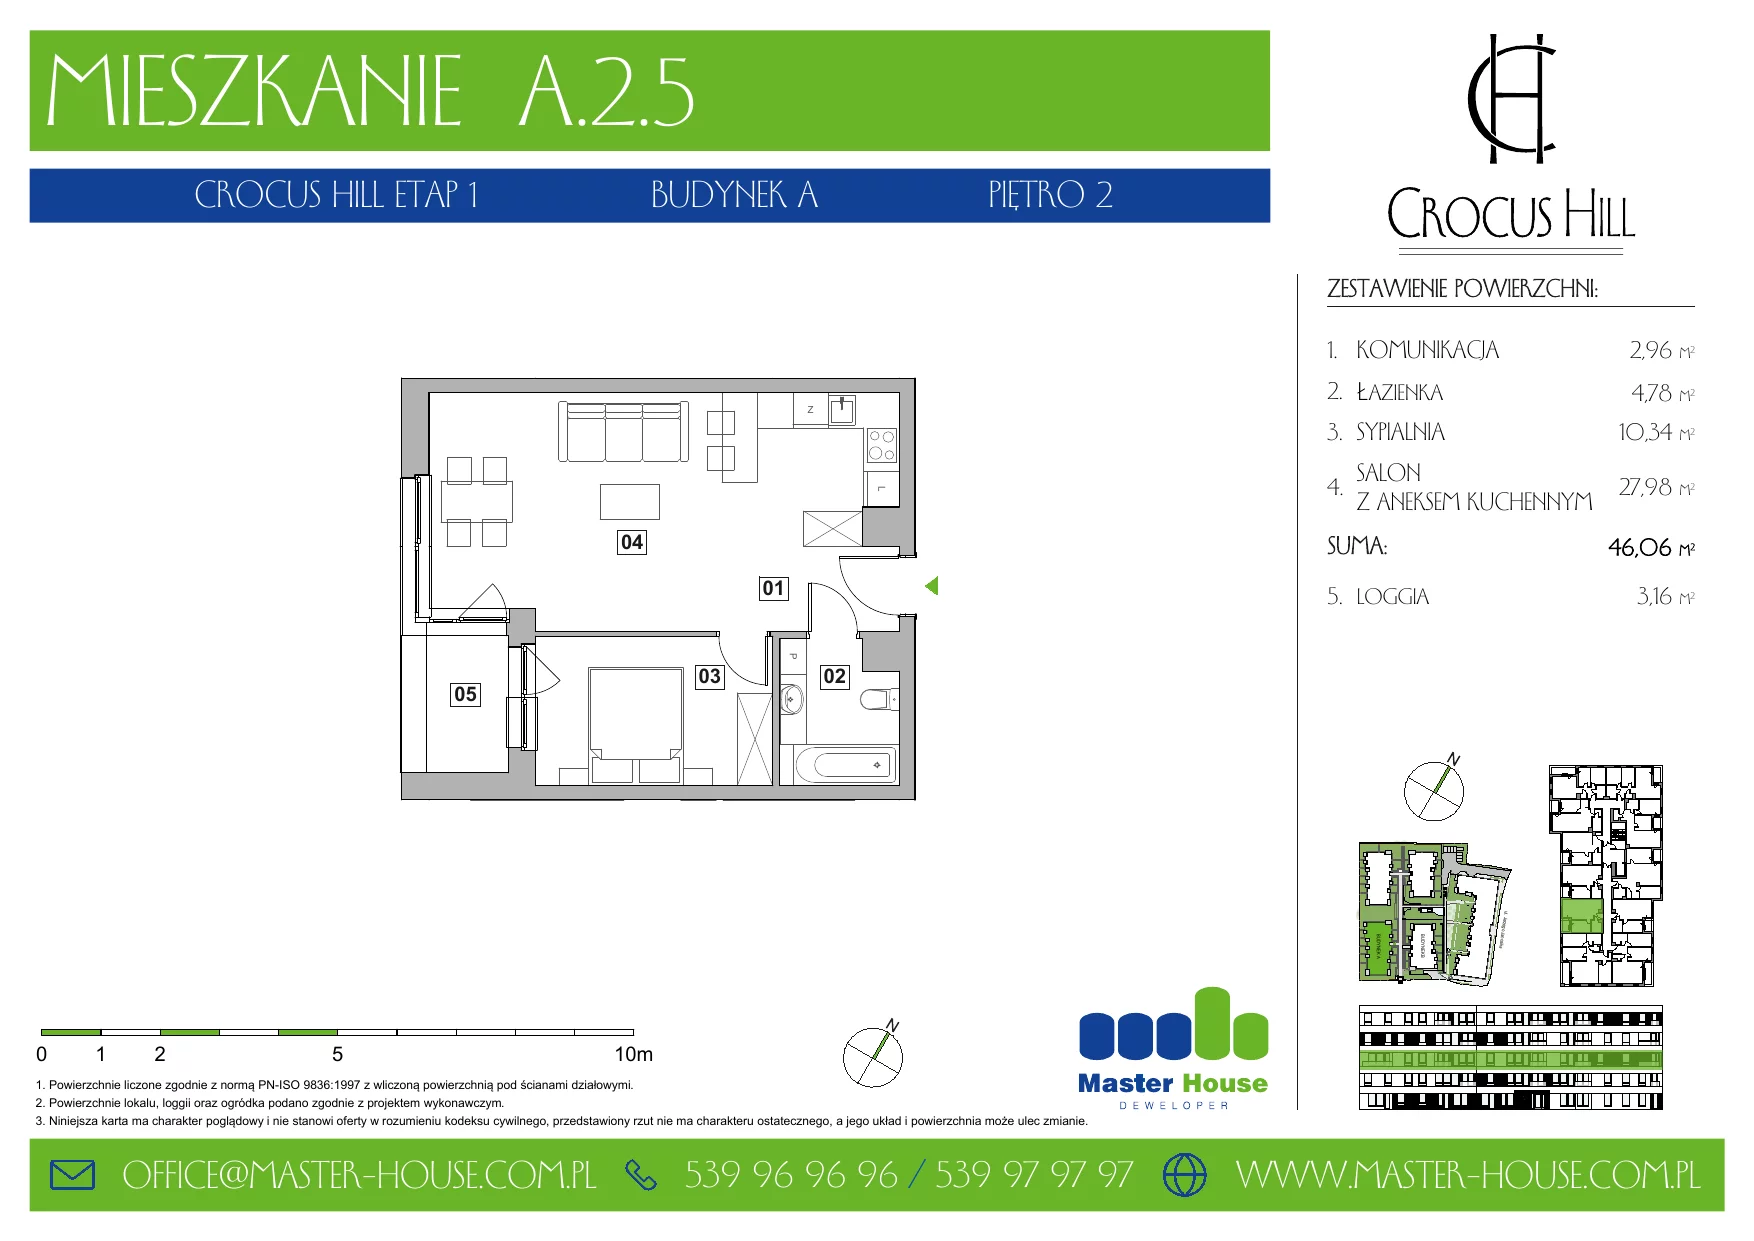 Mieszkanie 46,06 m², piętro 2, oferta nr A.2.5, Crocus Hill, Szczecin, Śródmieście, ul. Jerzego Janosika 2, 2A, 3, 3A